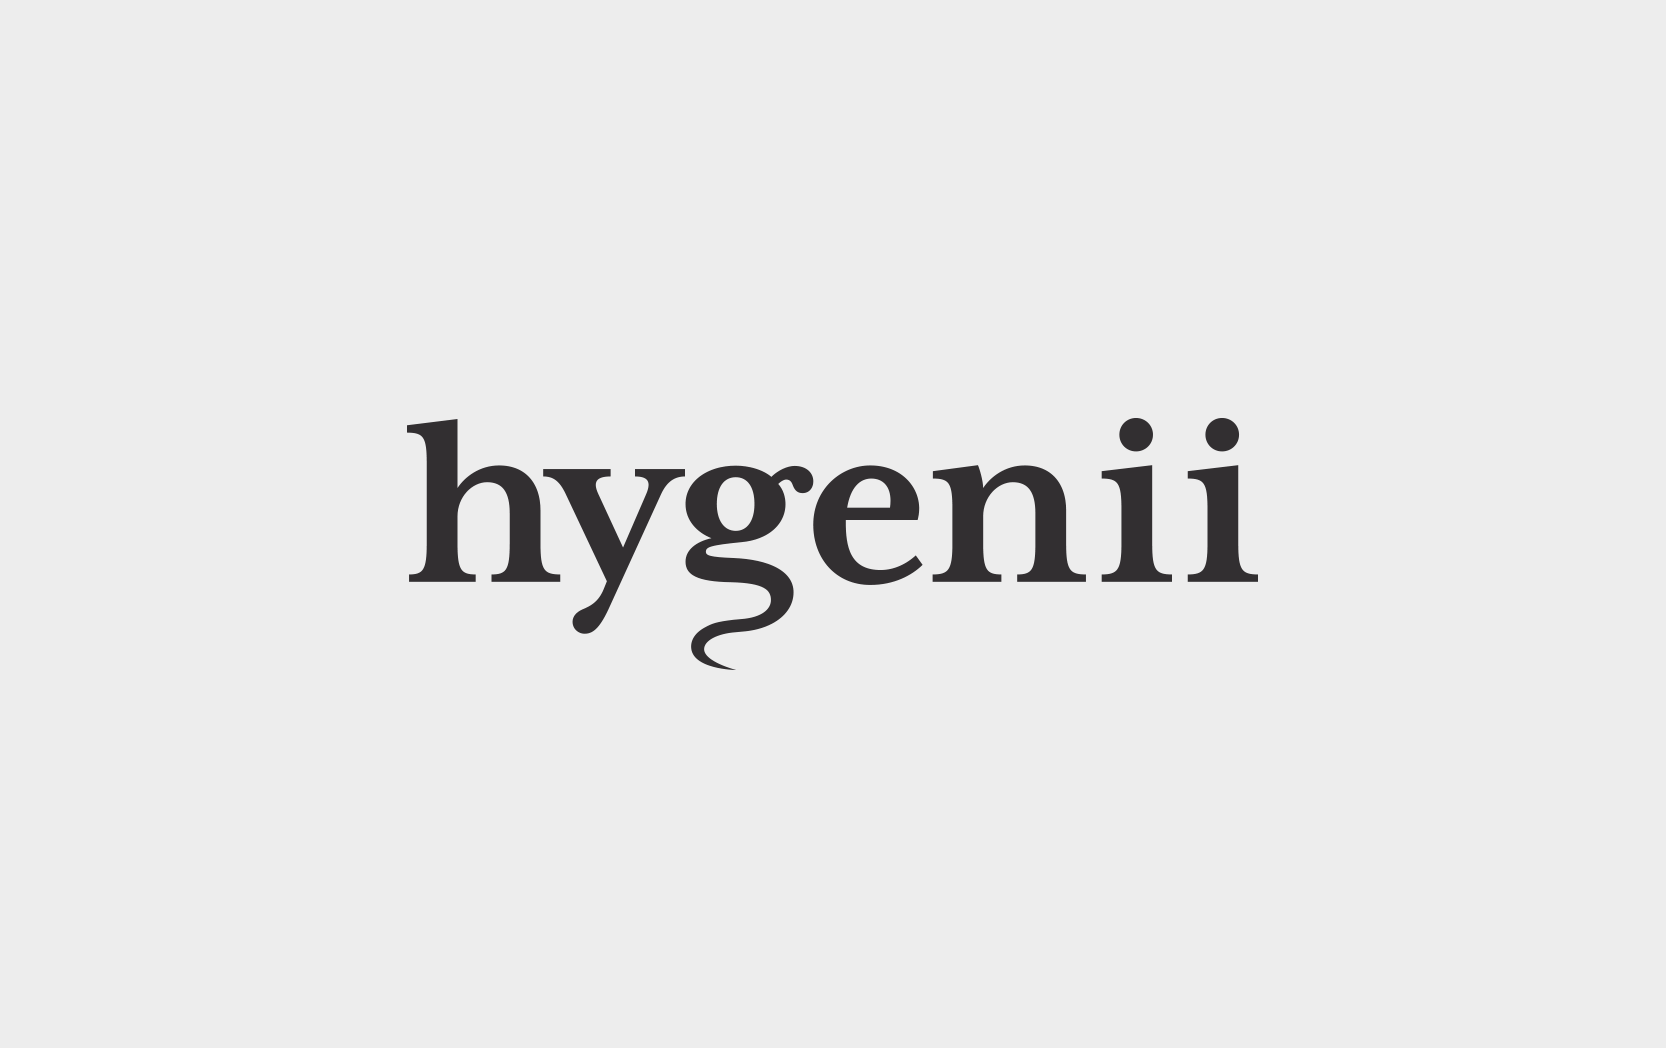 Hygenii